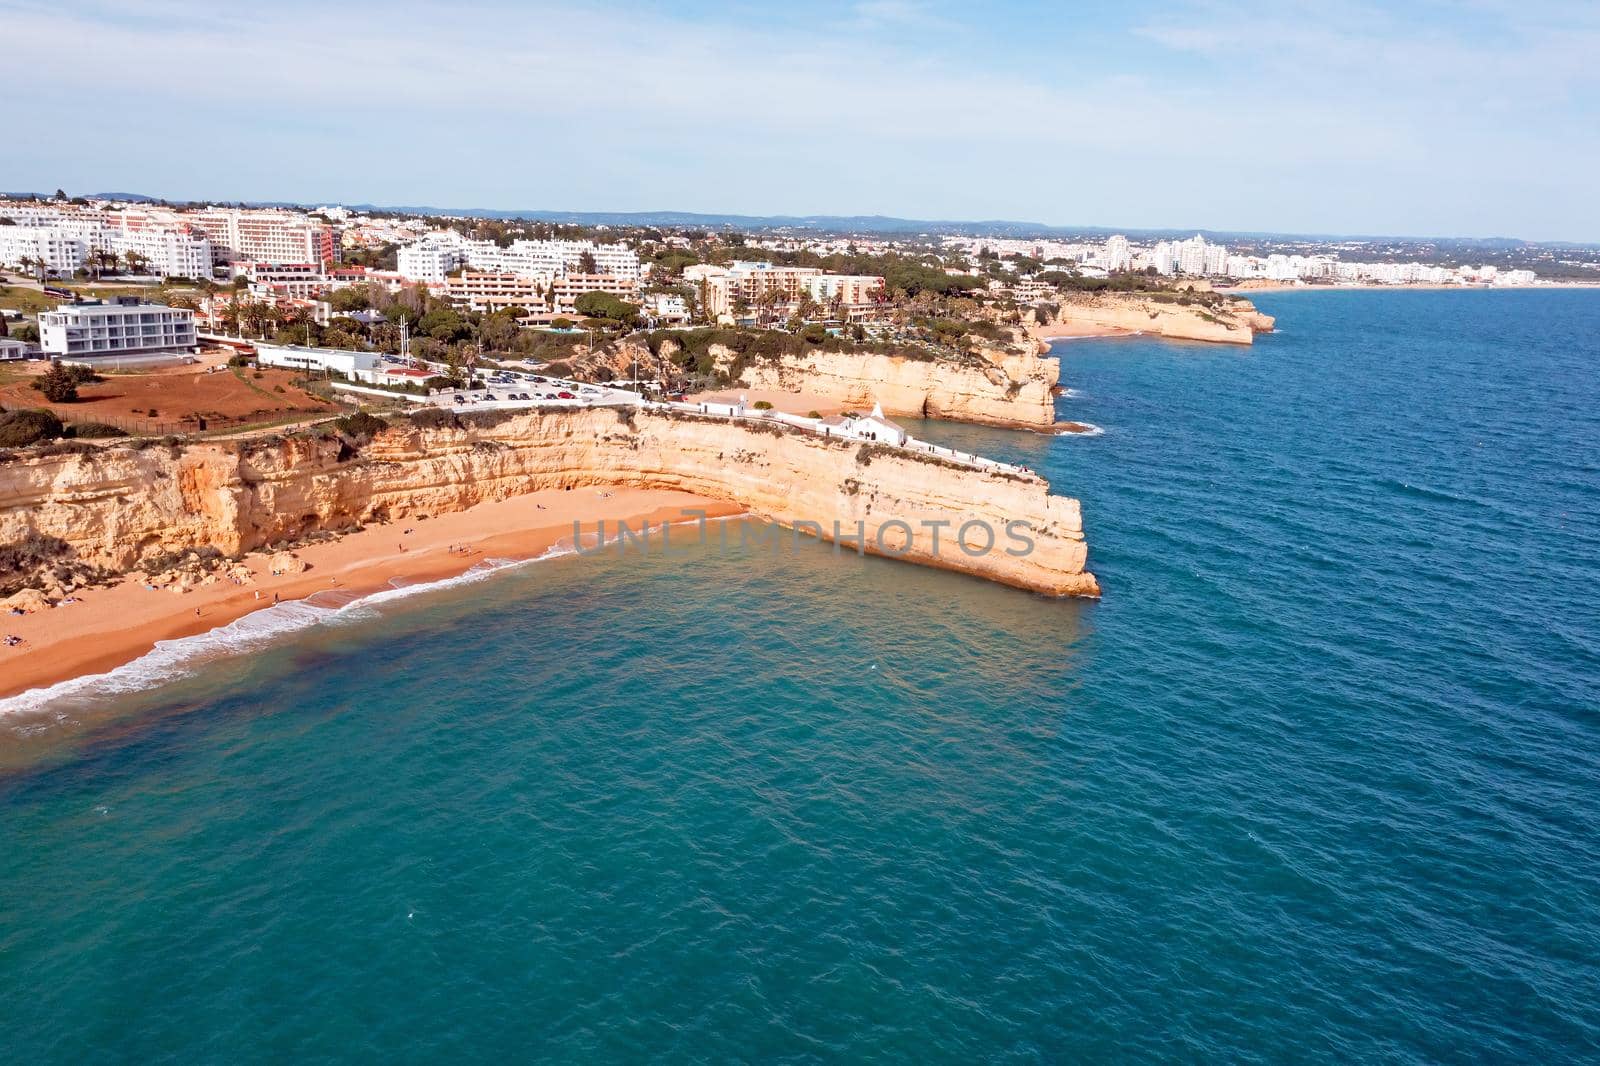 Aerial from the Algarve coastline at Church Senhora de Nossa in Armacao de Pera Portugal by devy